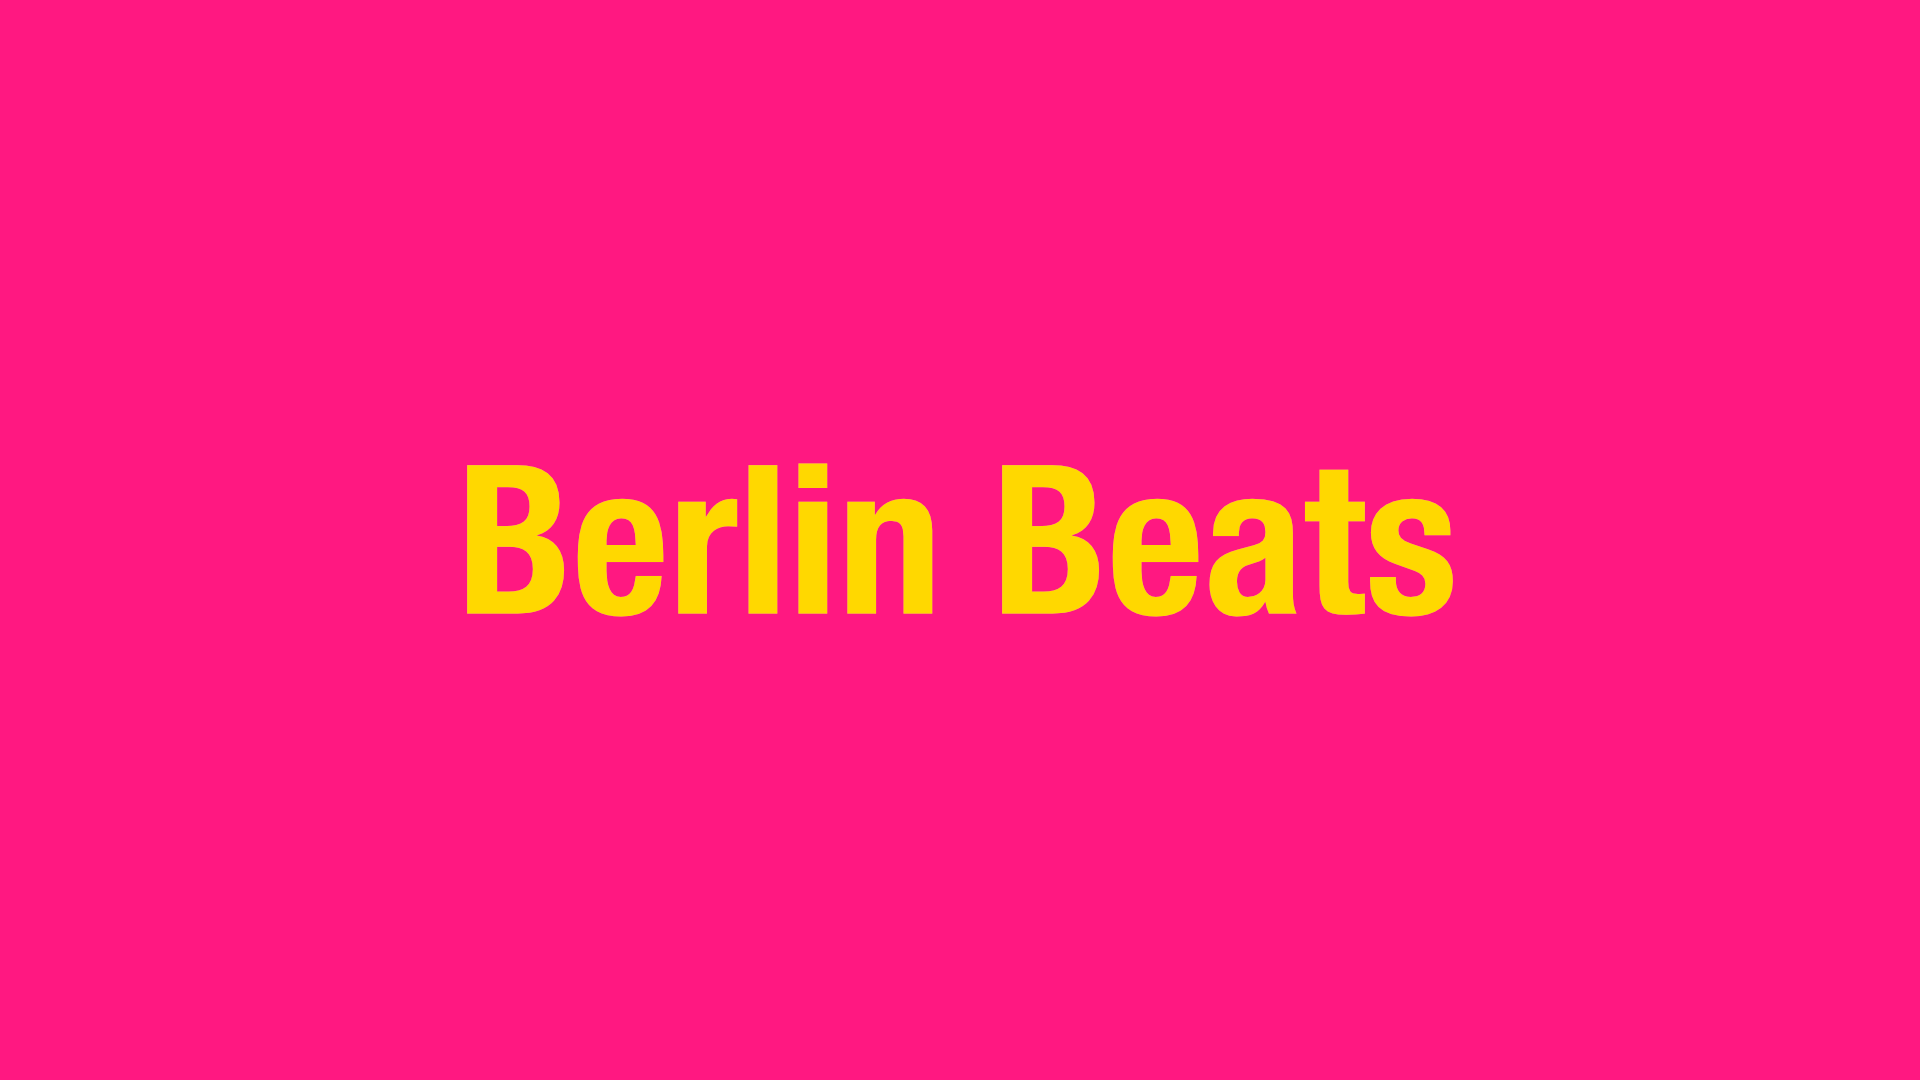 Berlin Beats